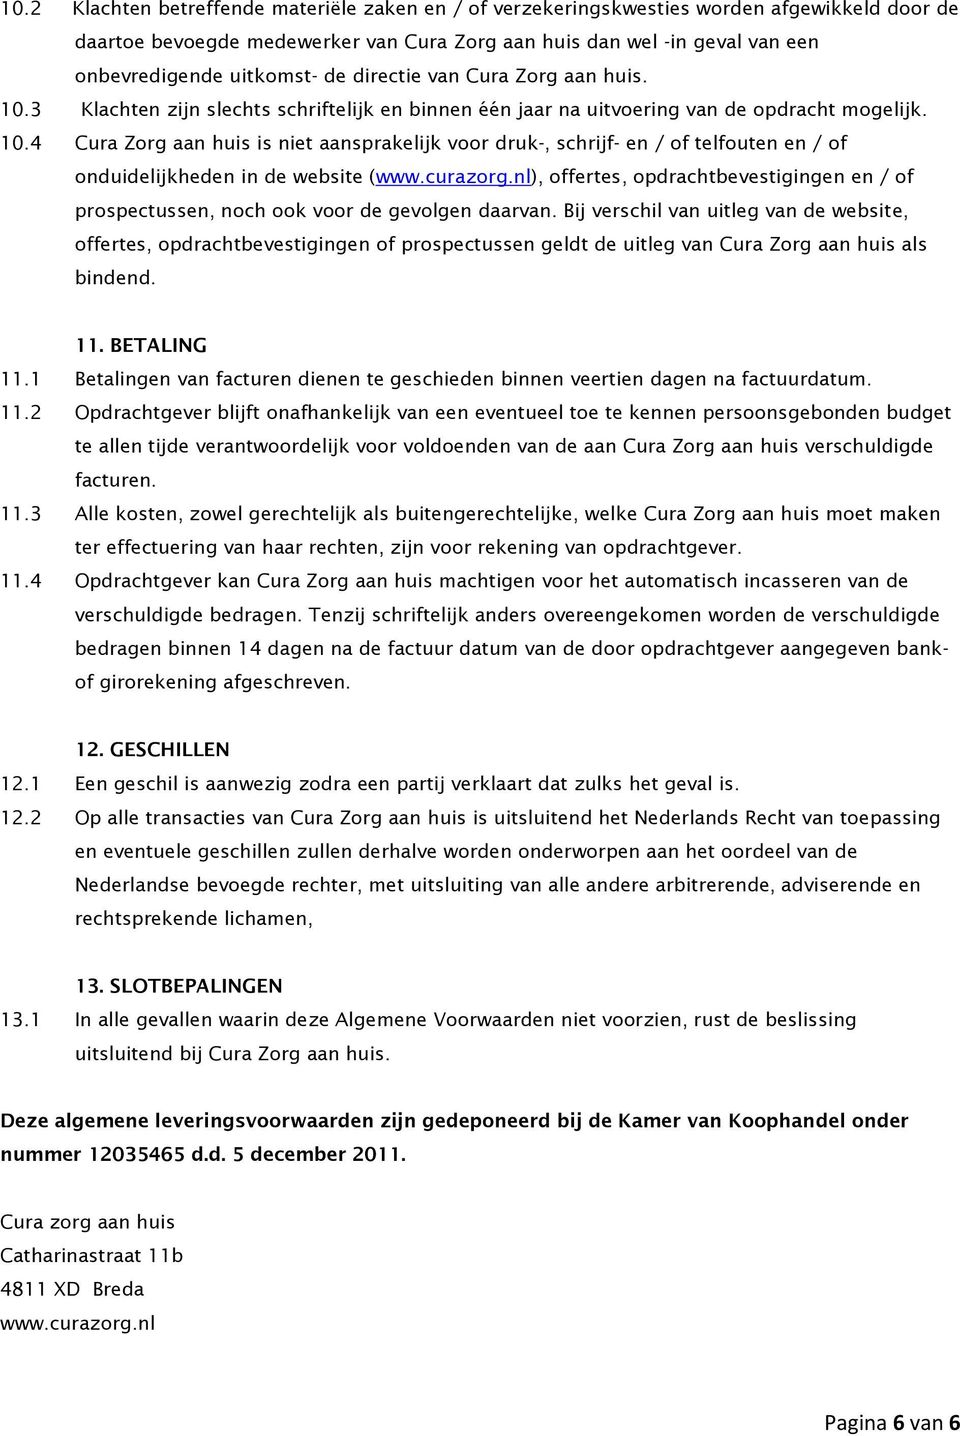 curazorg.nl), offertes, opdrachtbevestigingen en / of prospectussen, noch ook voor de gevolgen daarvan.